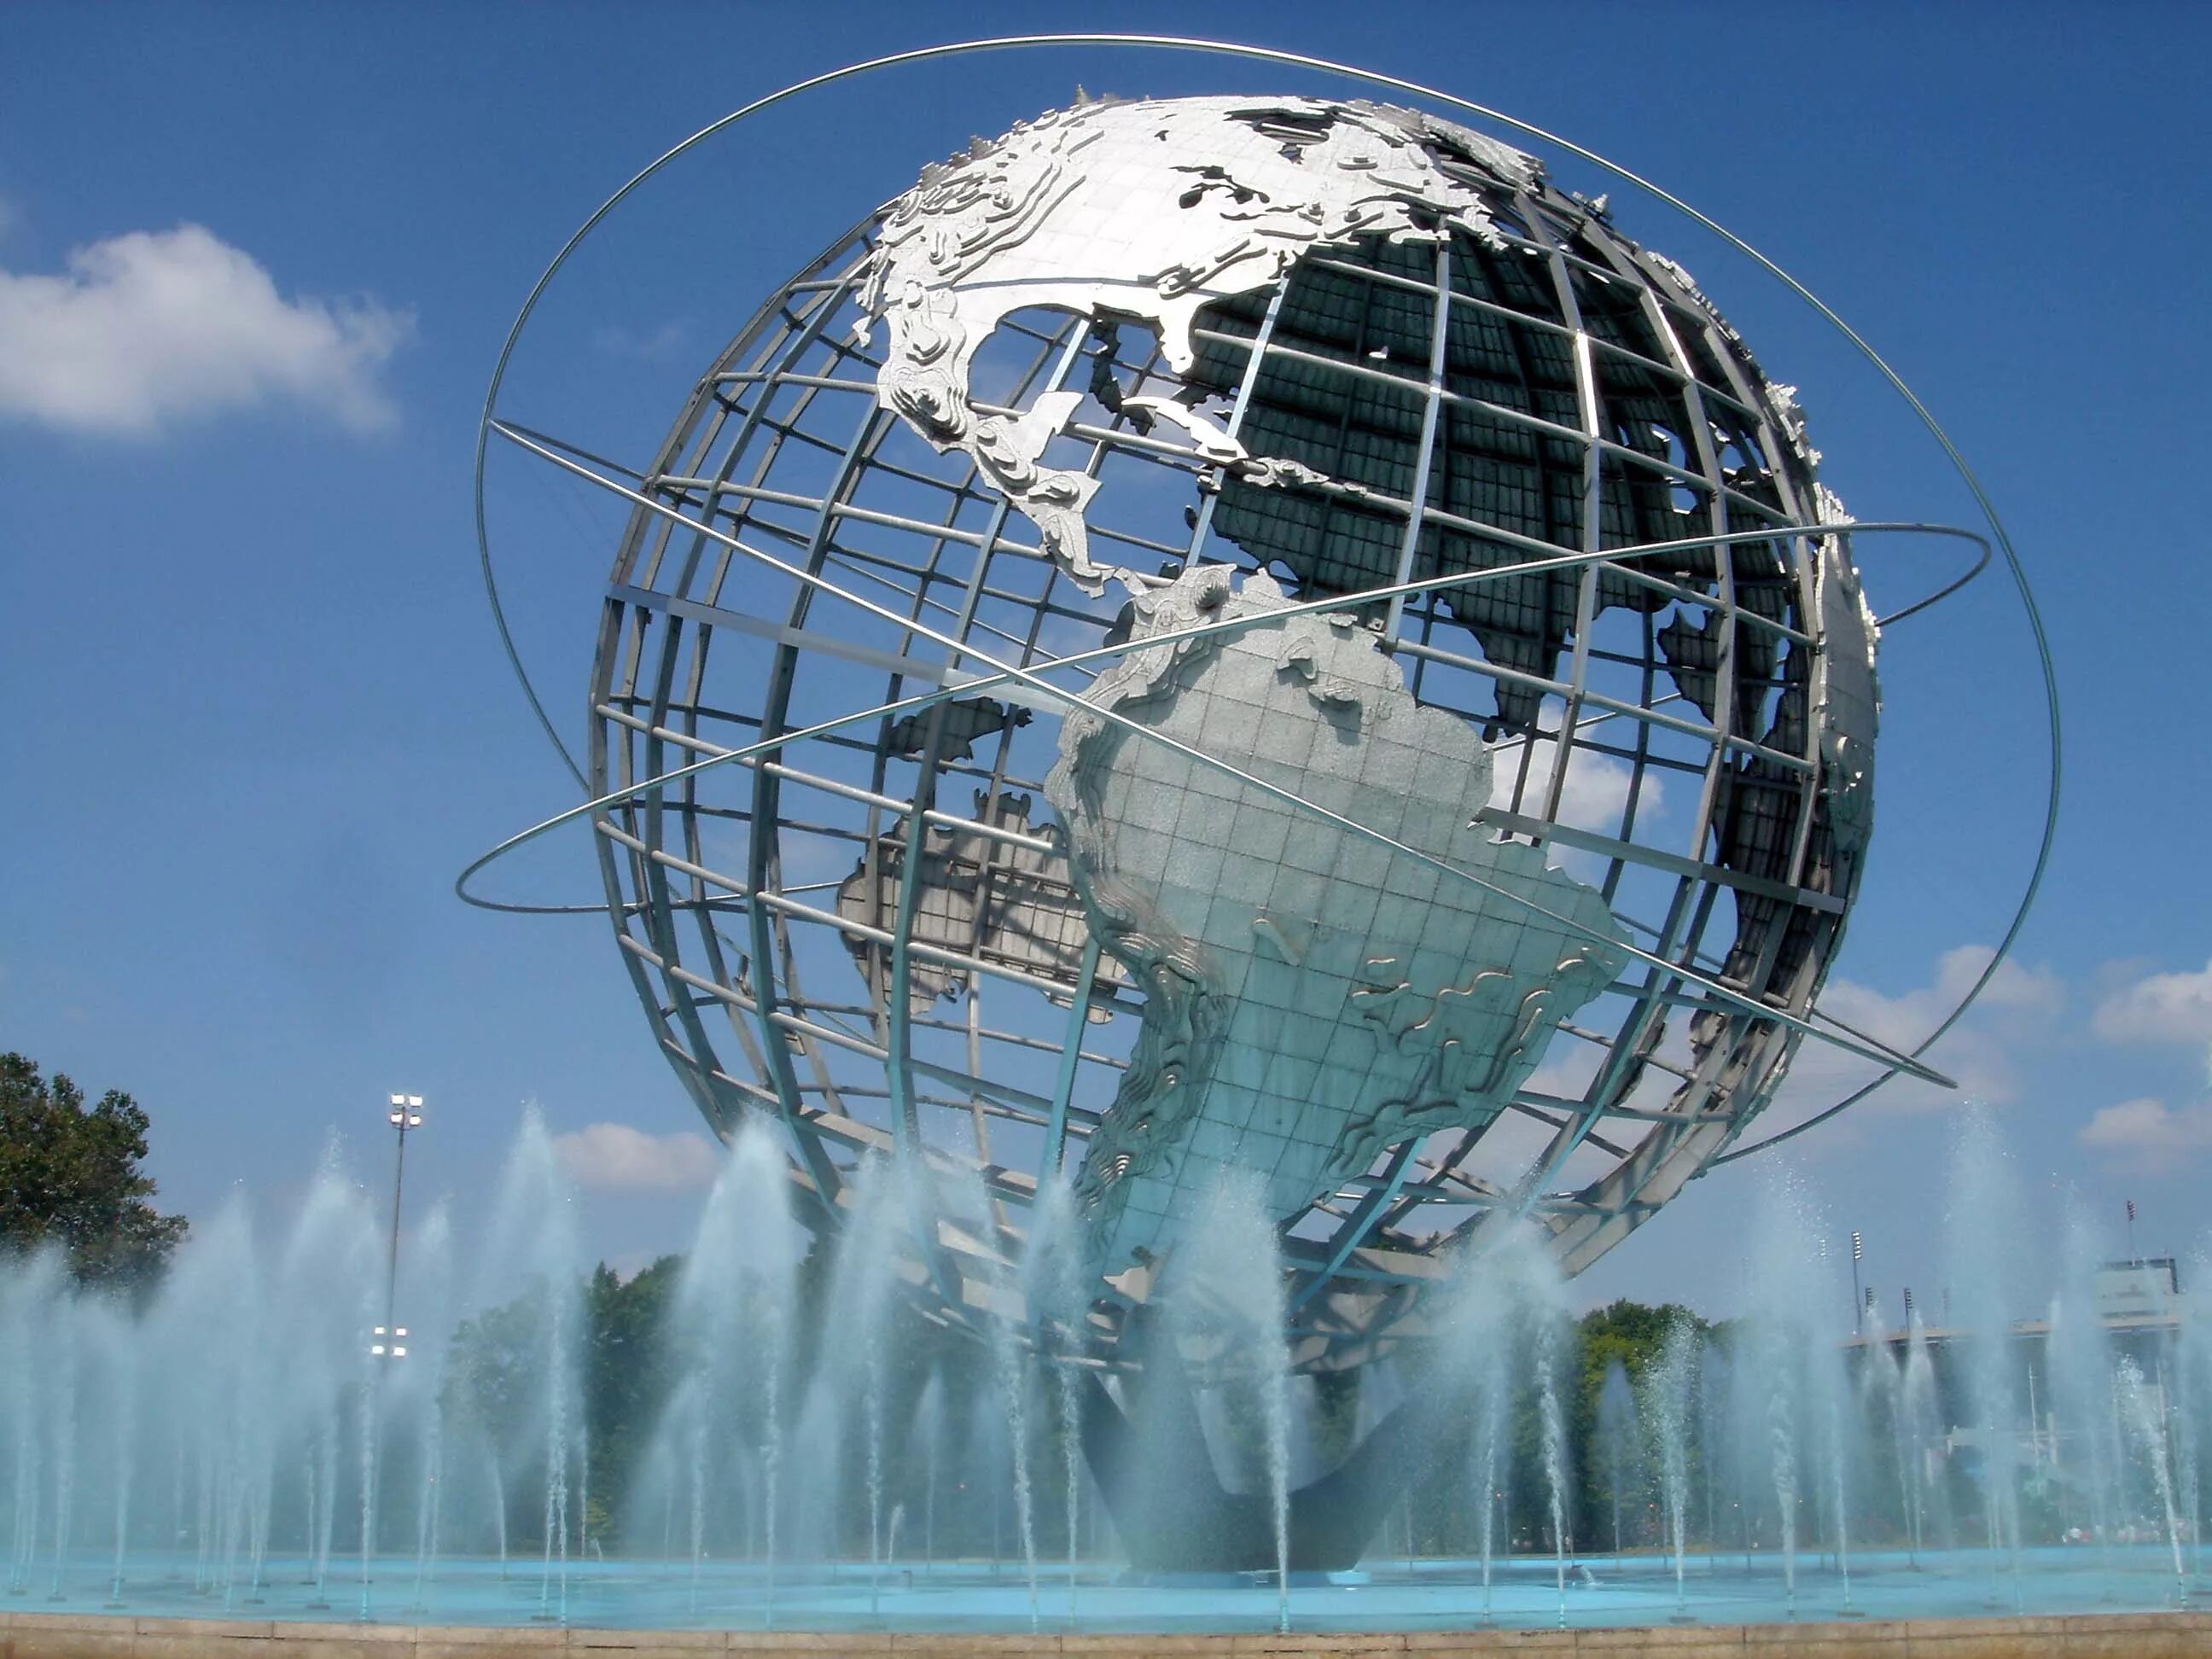 Глобус в шаре. Фонтан Унисфера, Нью-Йорк, США. Флашинг-Медоус - корона-парк. Памятник в виде земного шара.